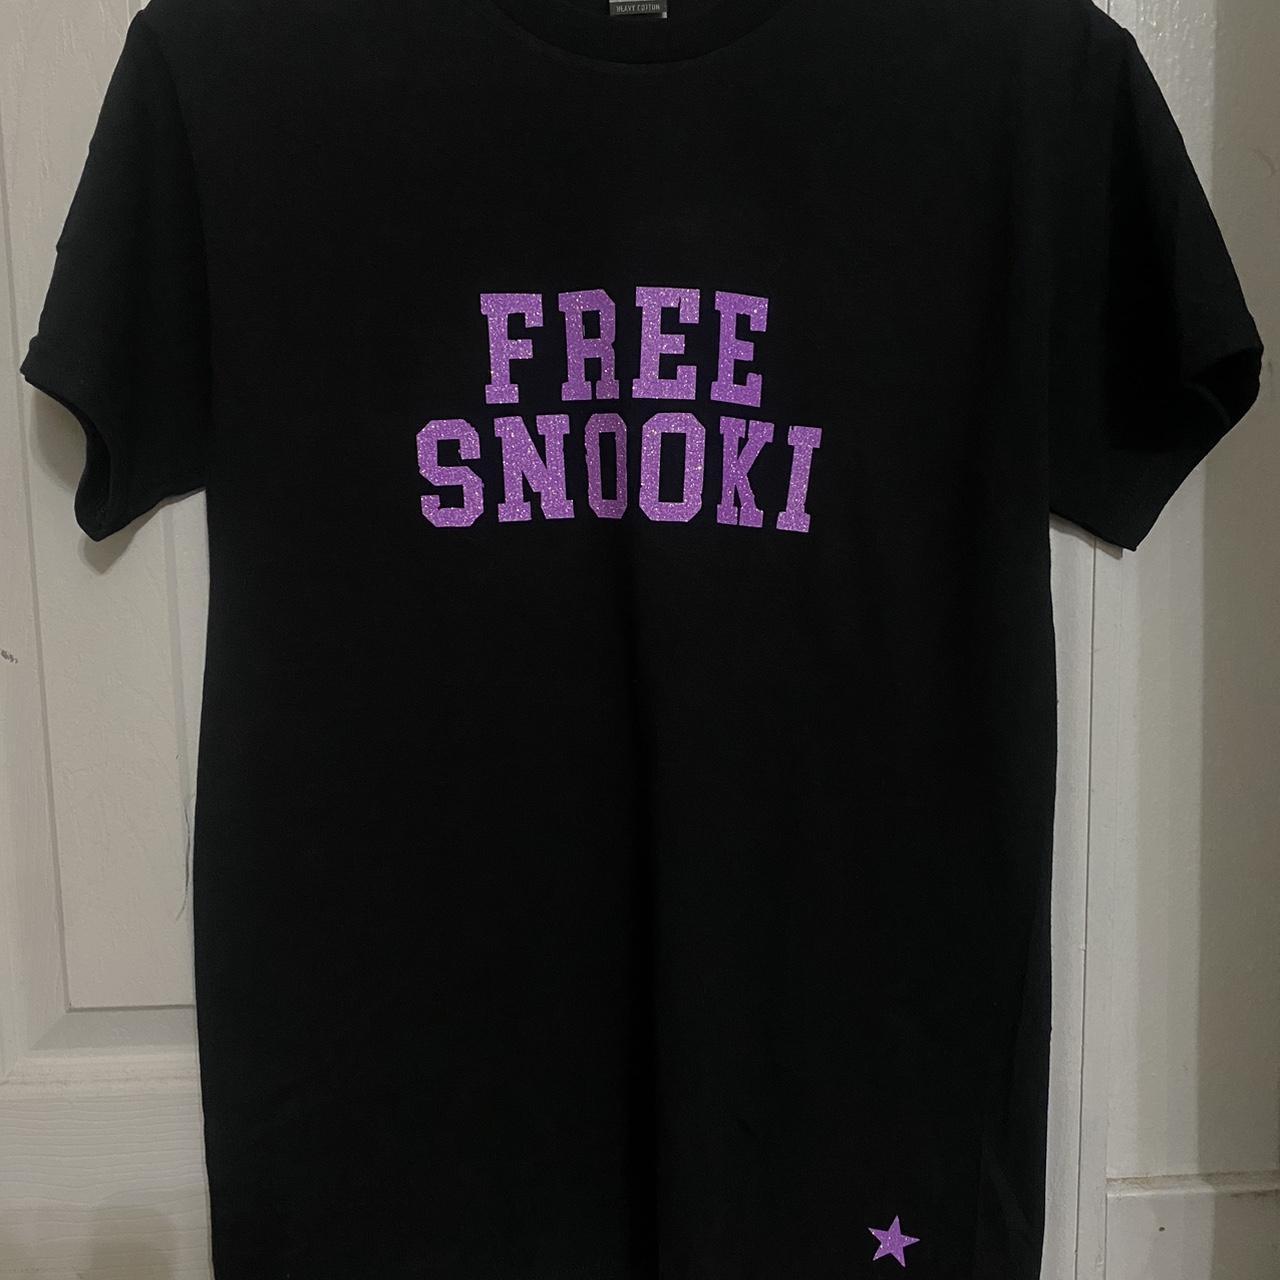 Free Snooki Man Woman T-shirt